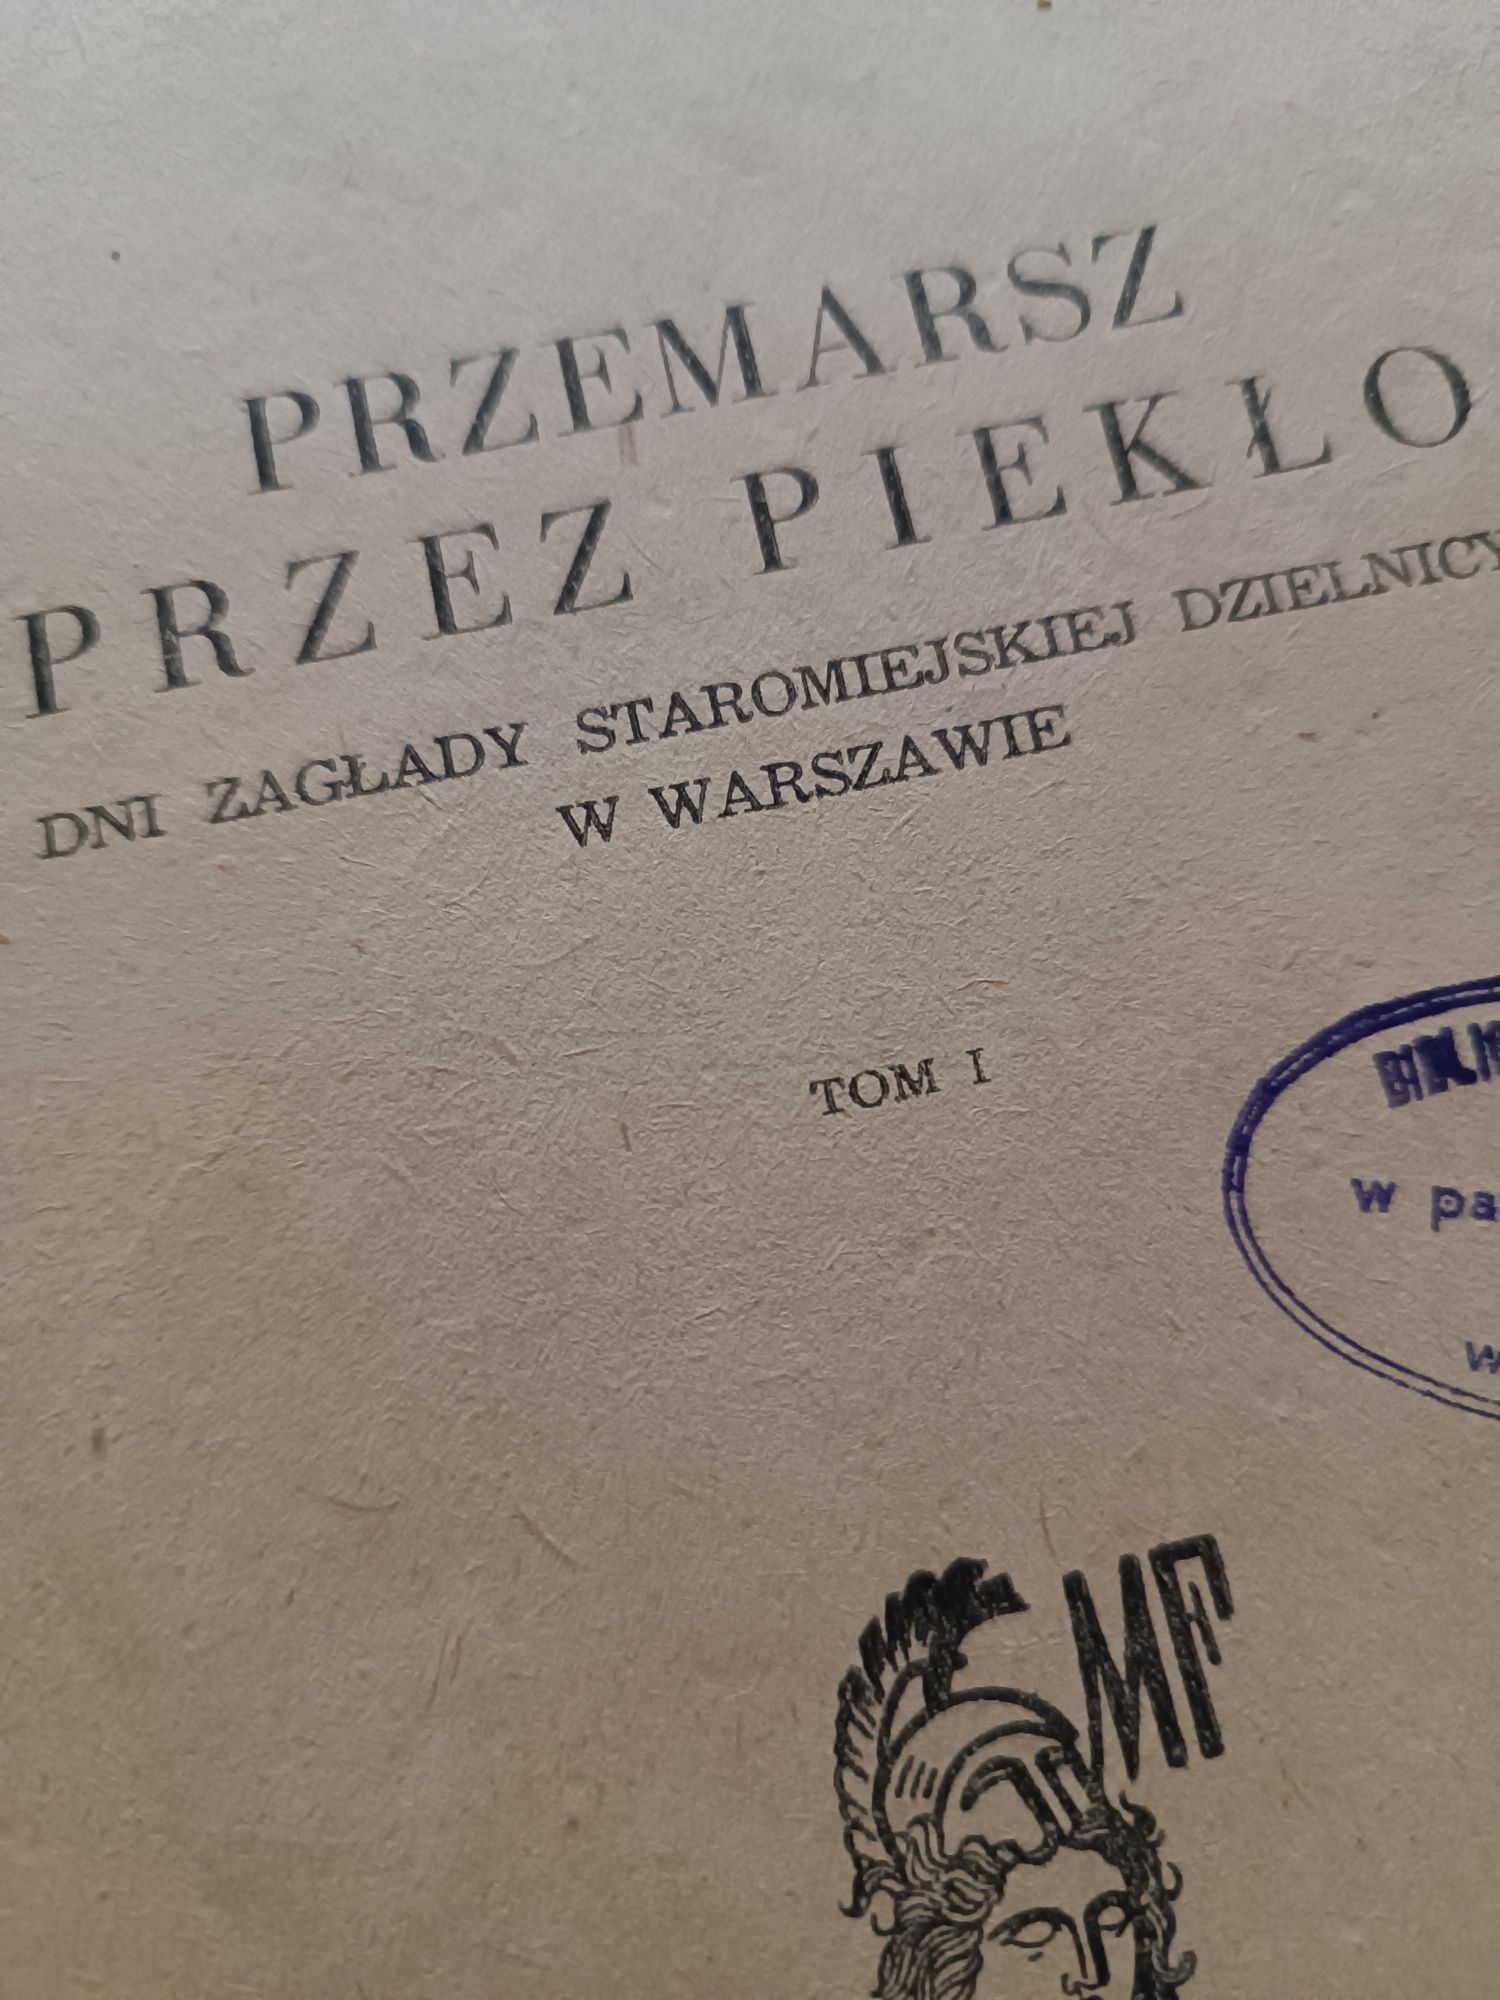 Stanisław Podlewski - Przemarsz przez piekło tom I i II 1949